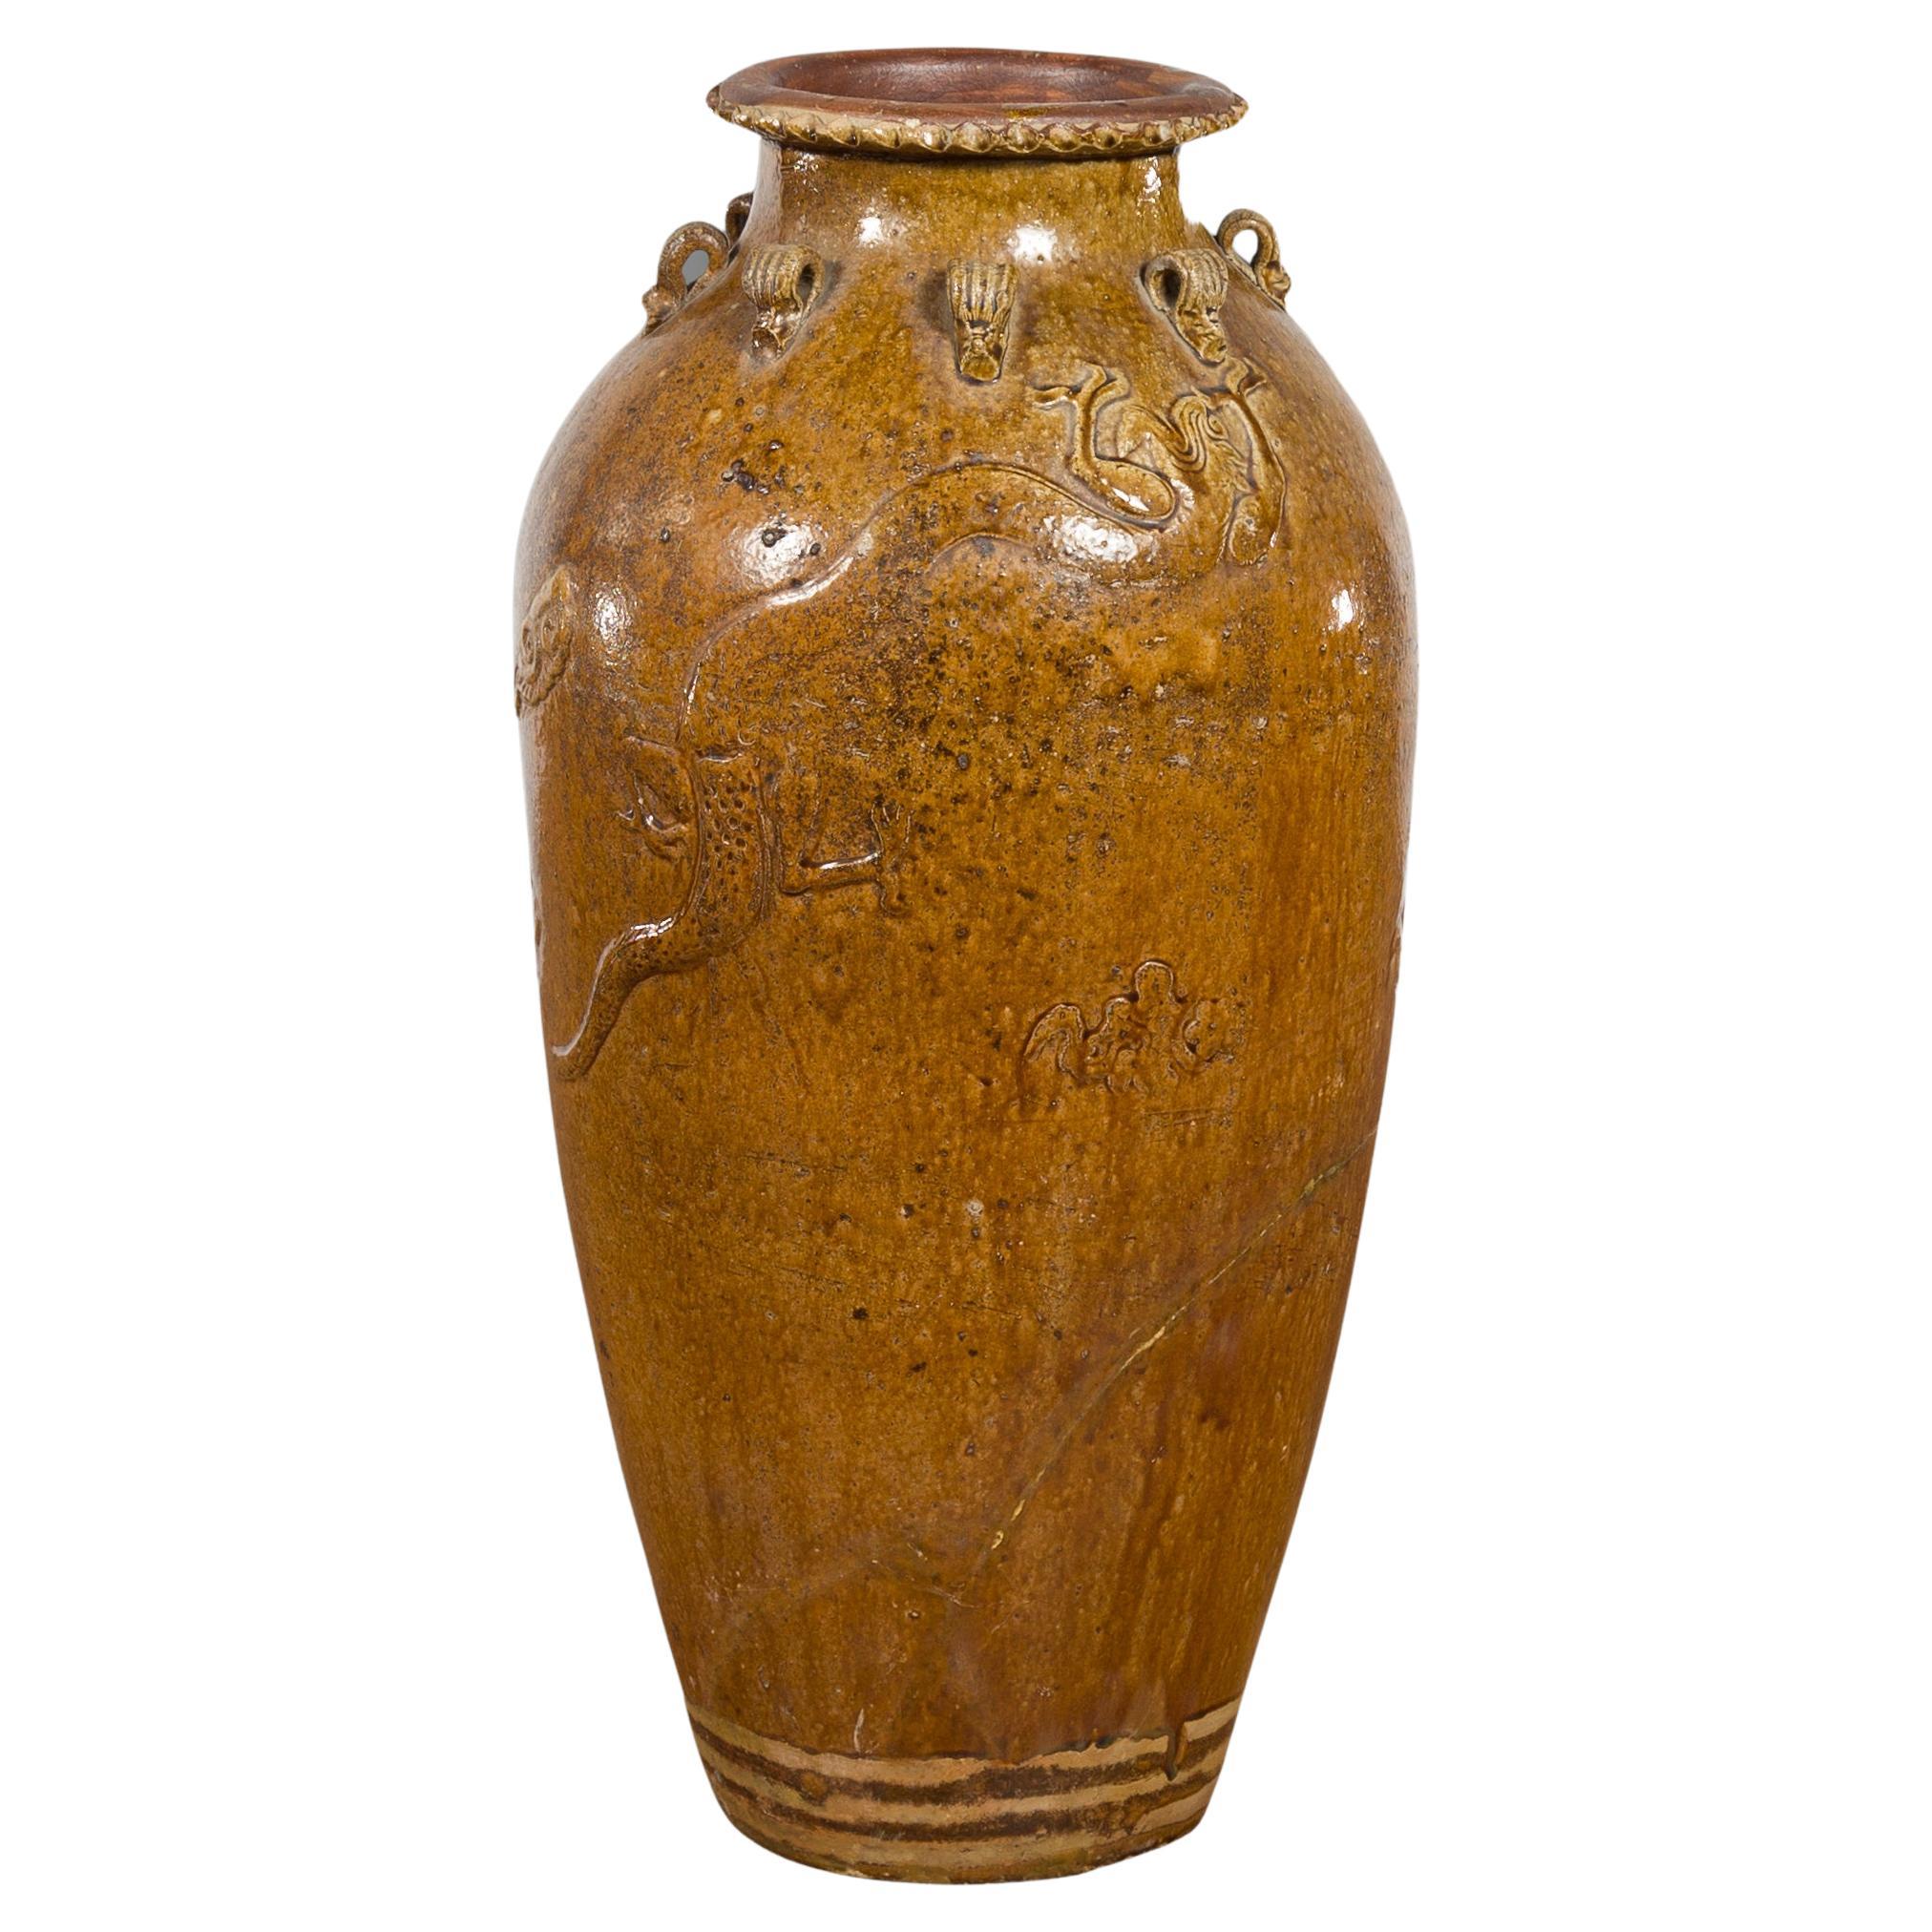 Antico vaso Martaban del periodo della dinastia Qing, Cina, 18°-19° secolo